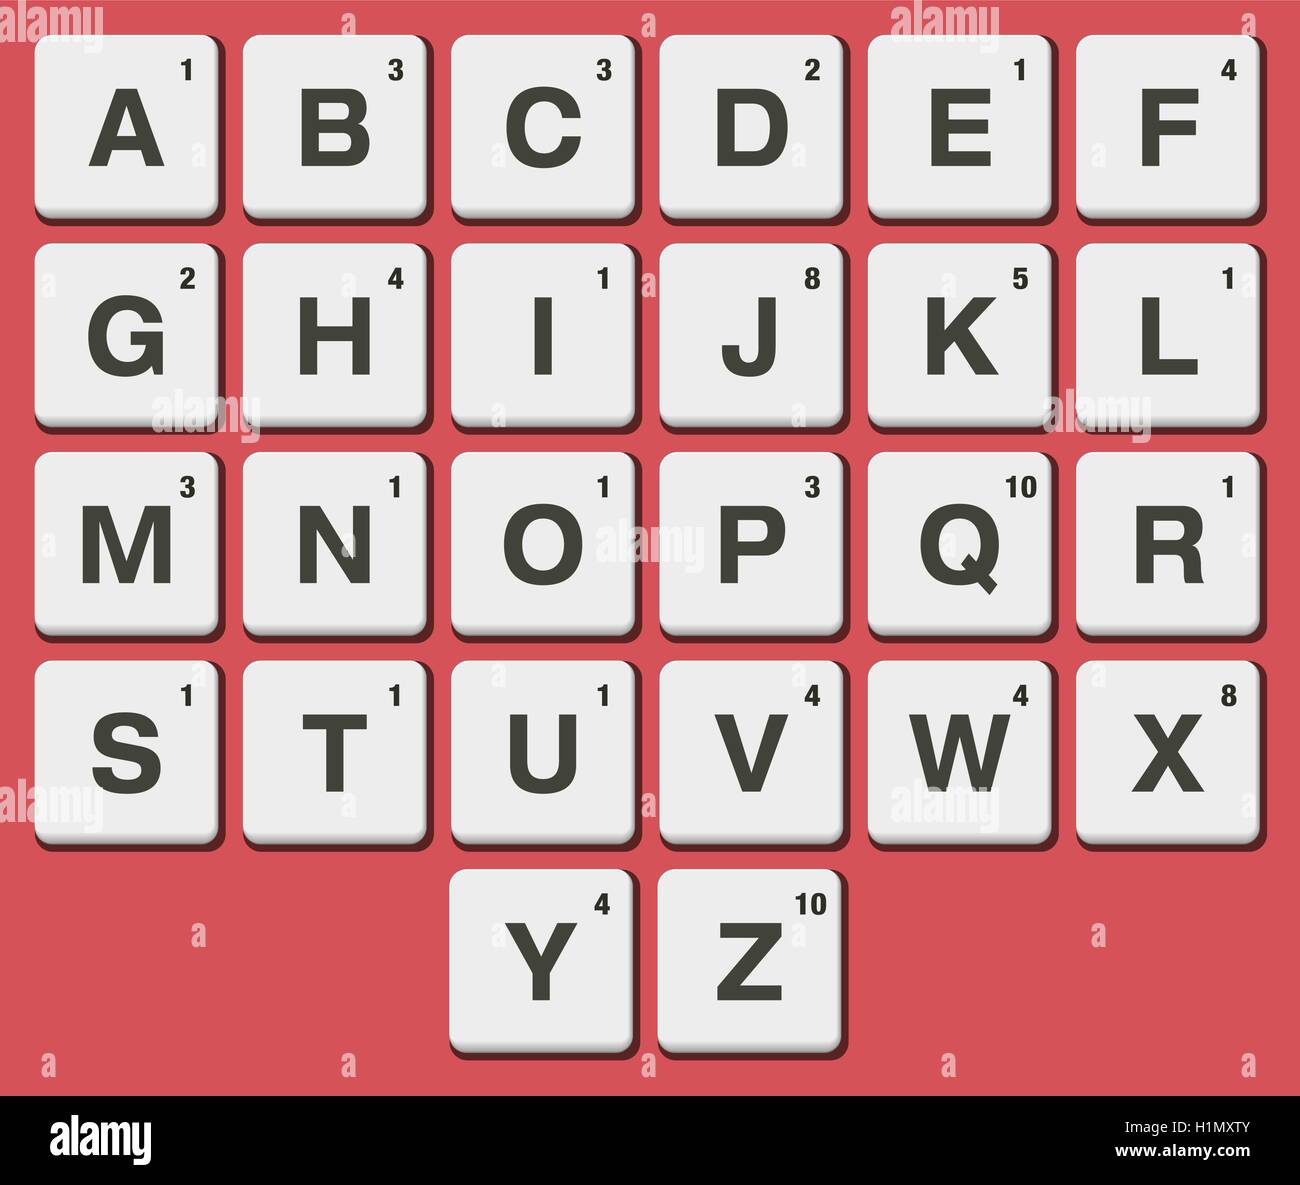 Piastrella in plastica alfabeto per rompicapo giochi di parole. Lettera di Scrabble piastrelle Illustrazione Vettoriale